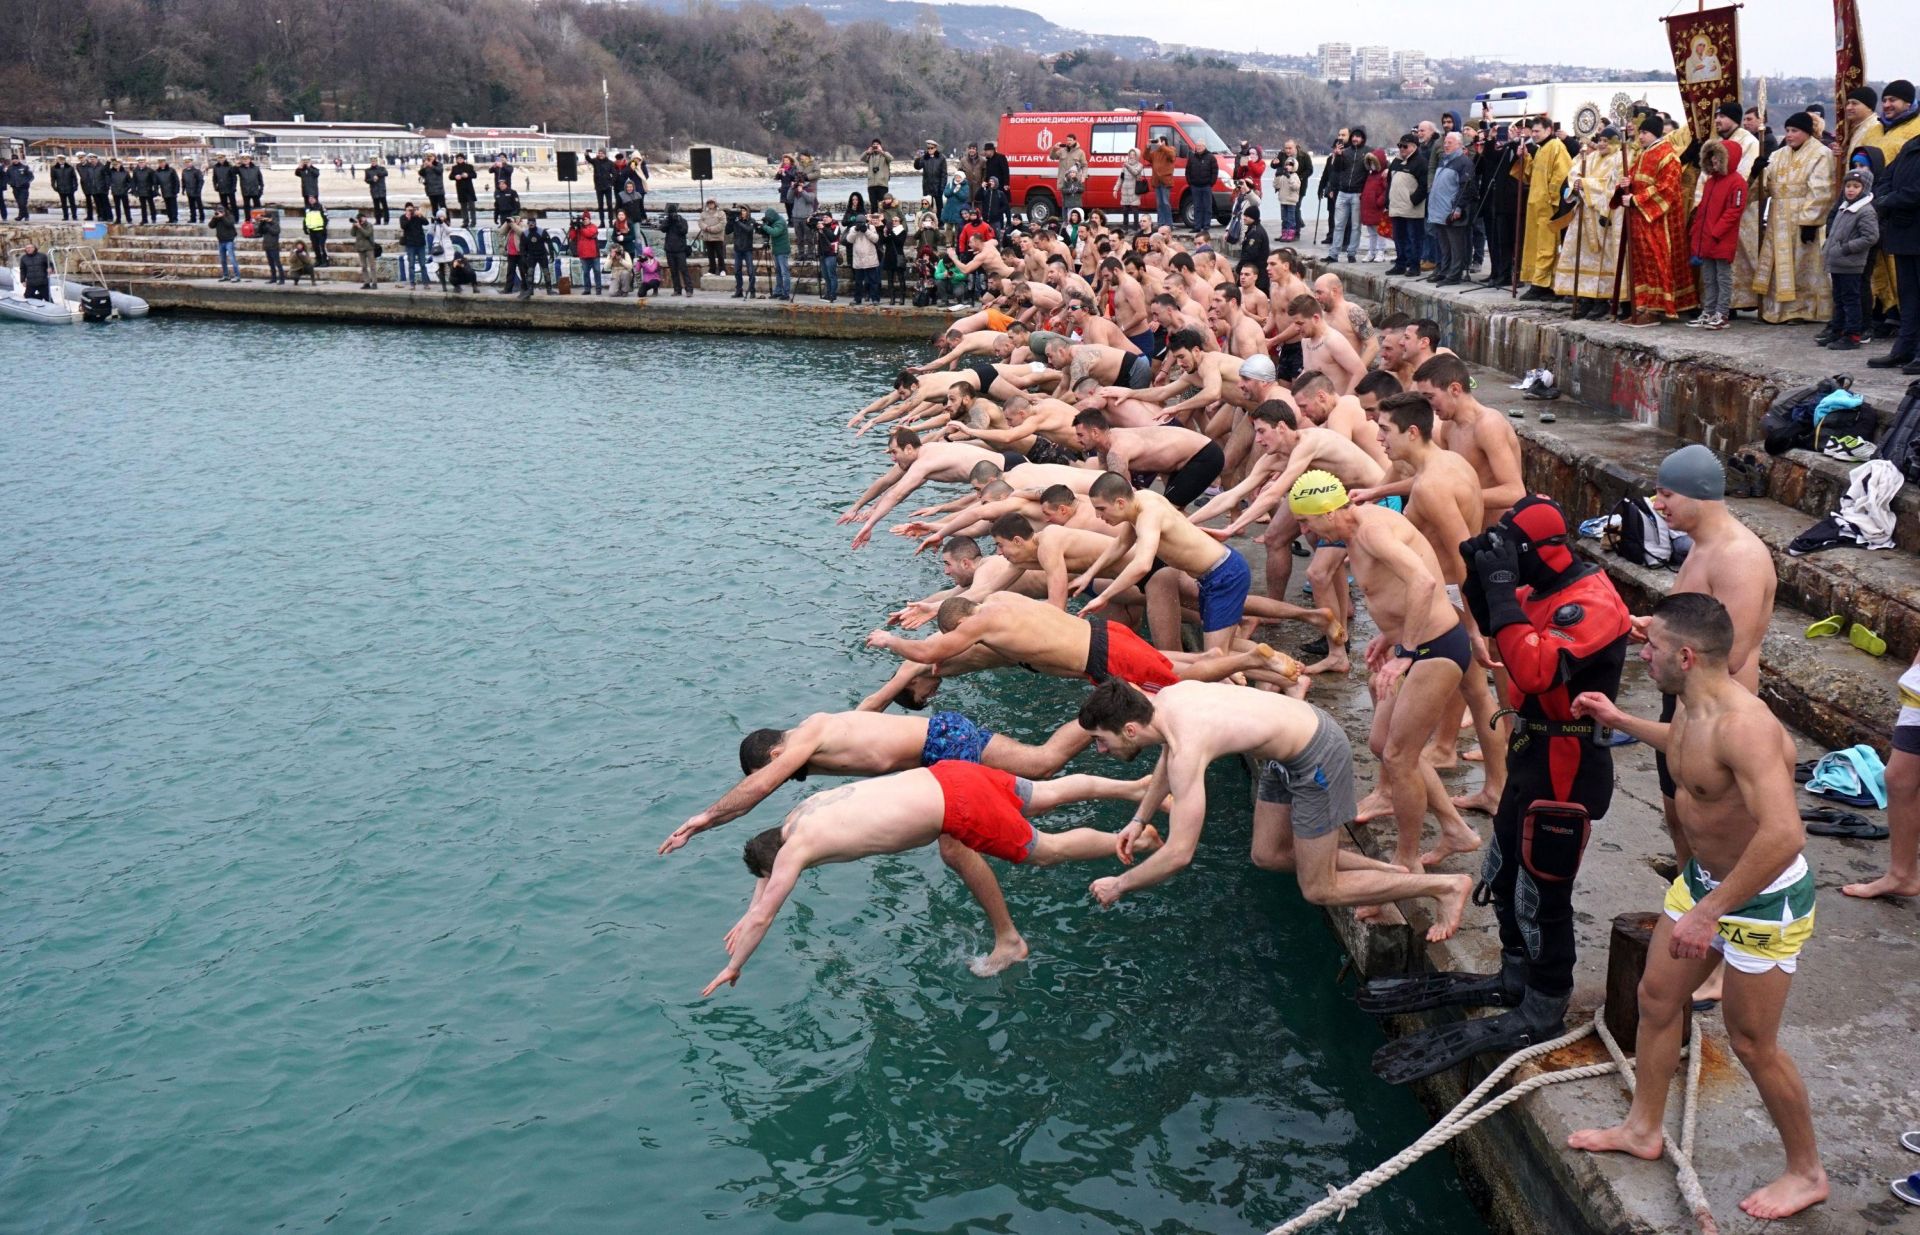 Въпреки обичайния за този сезон студ млади мъже скачат във водата и изваждат кръста от нея